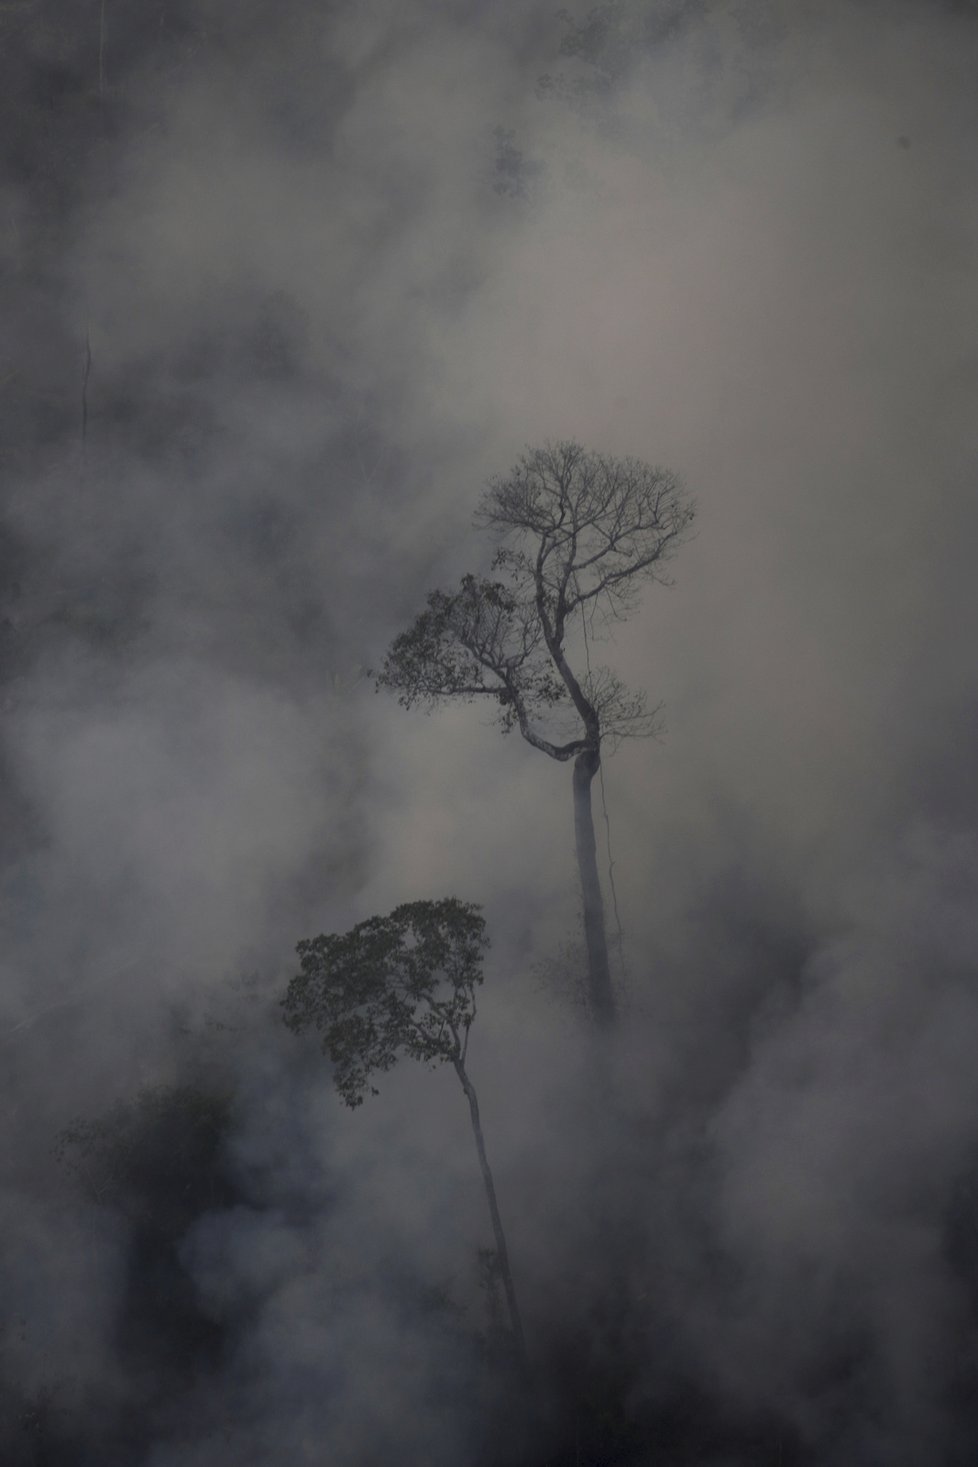 Rozsáhlé požáry v amazonském deštném pralese 